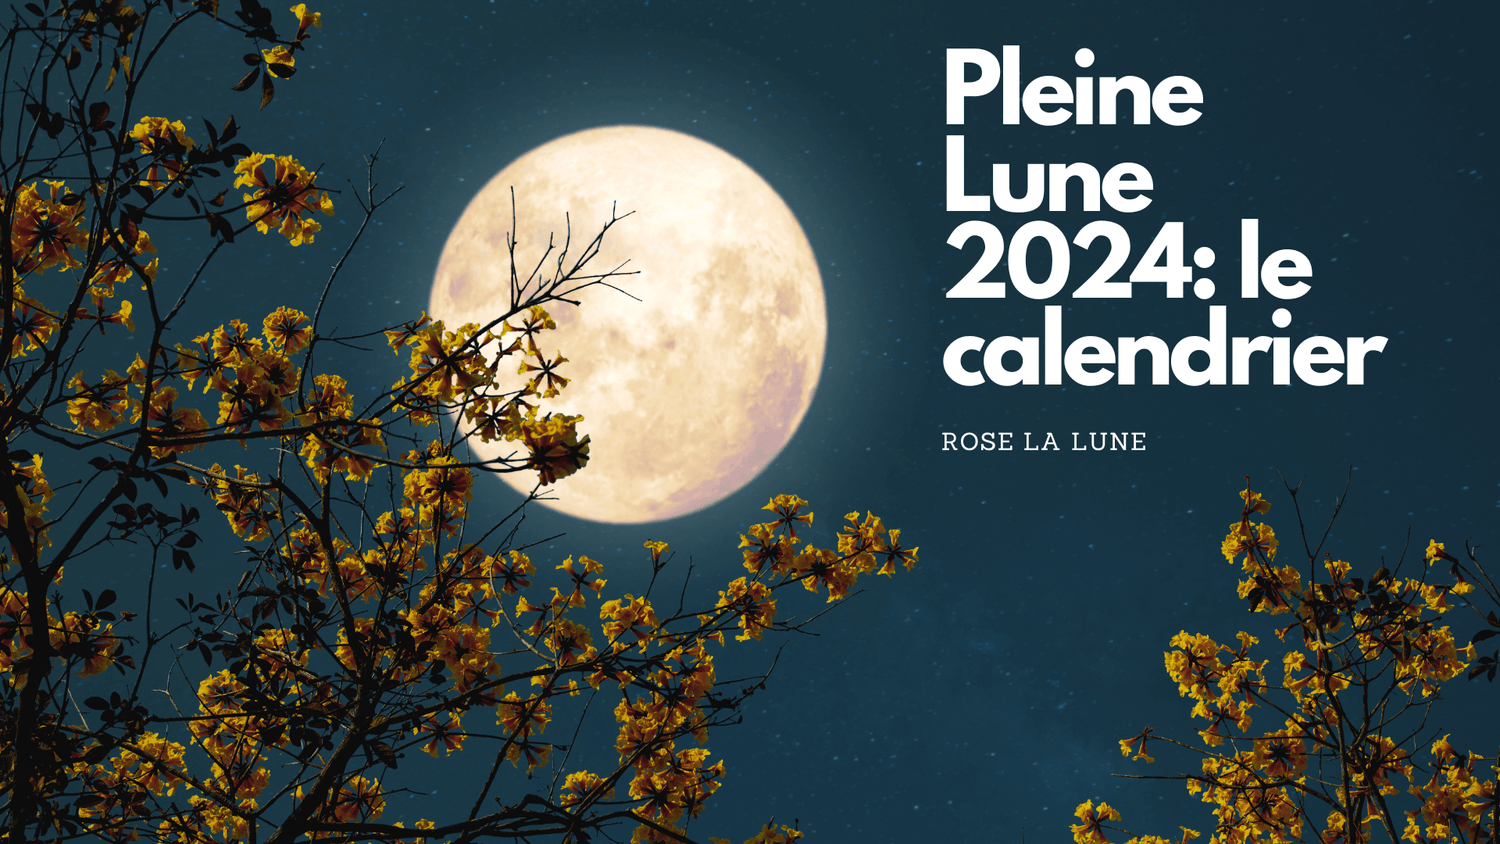 Pleine Lune 2024 le calendrier Rose La Lune